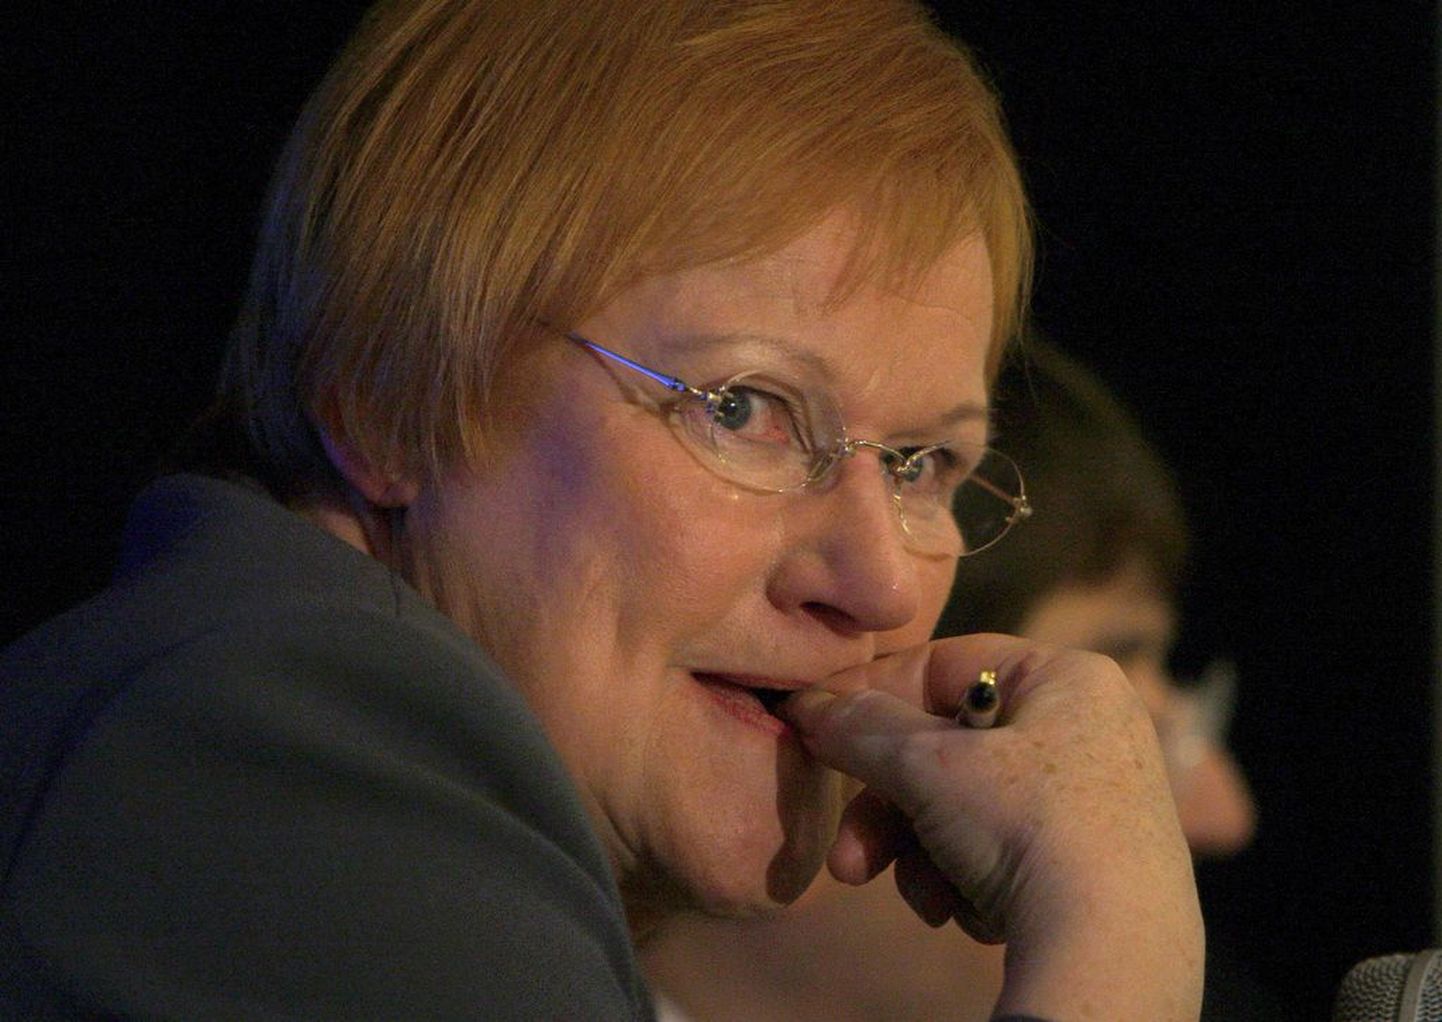 Soome endine president Tarja Halonen